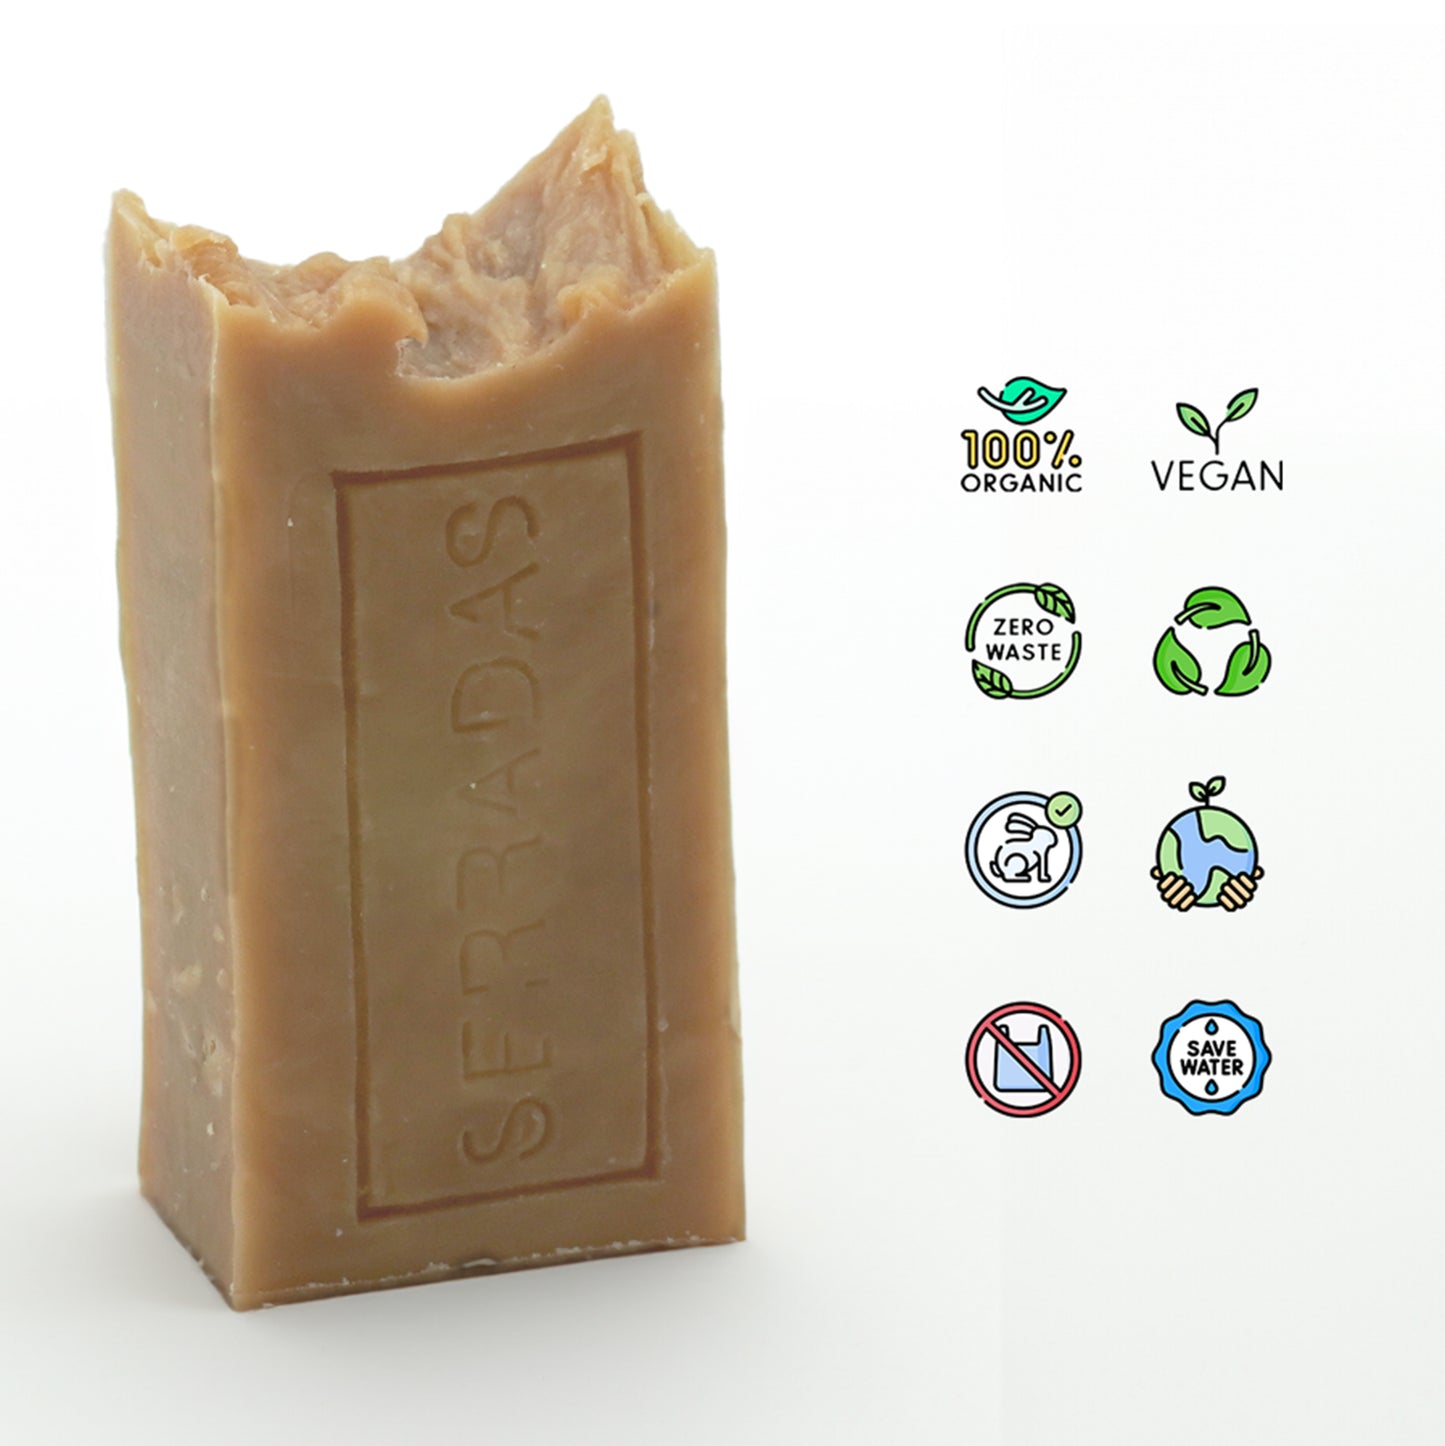 Sabonete Artesanal e Natural de neem Vegan Organic zero waste